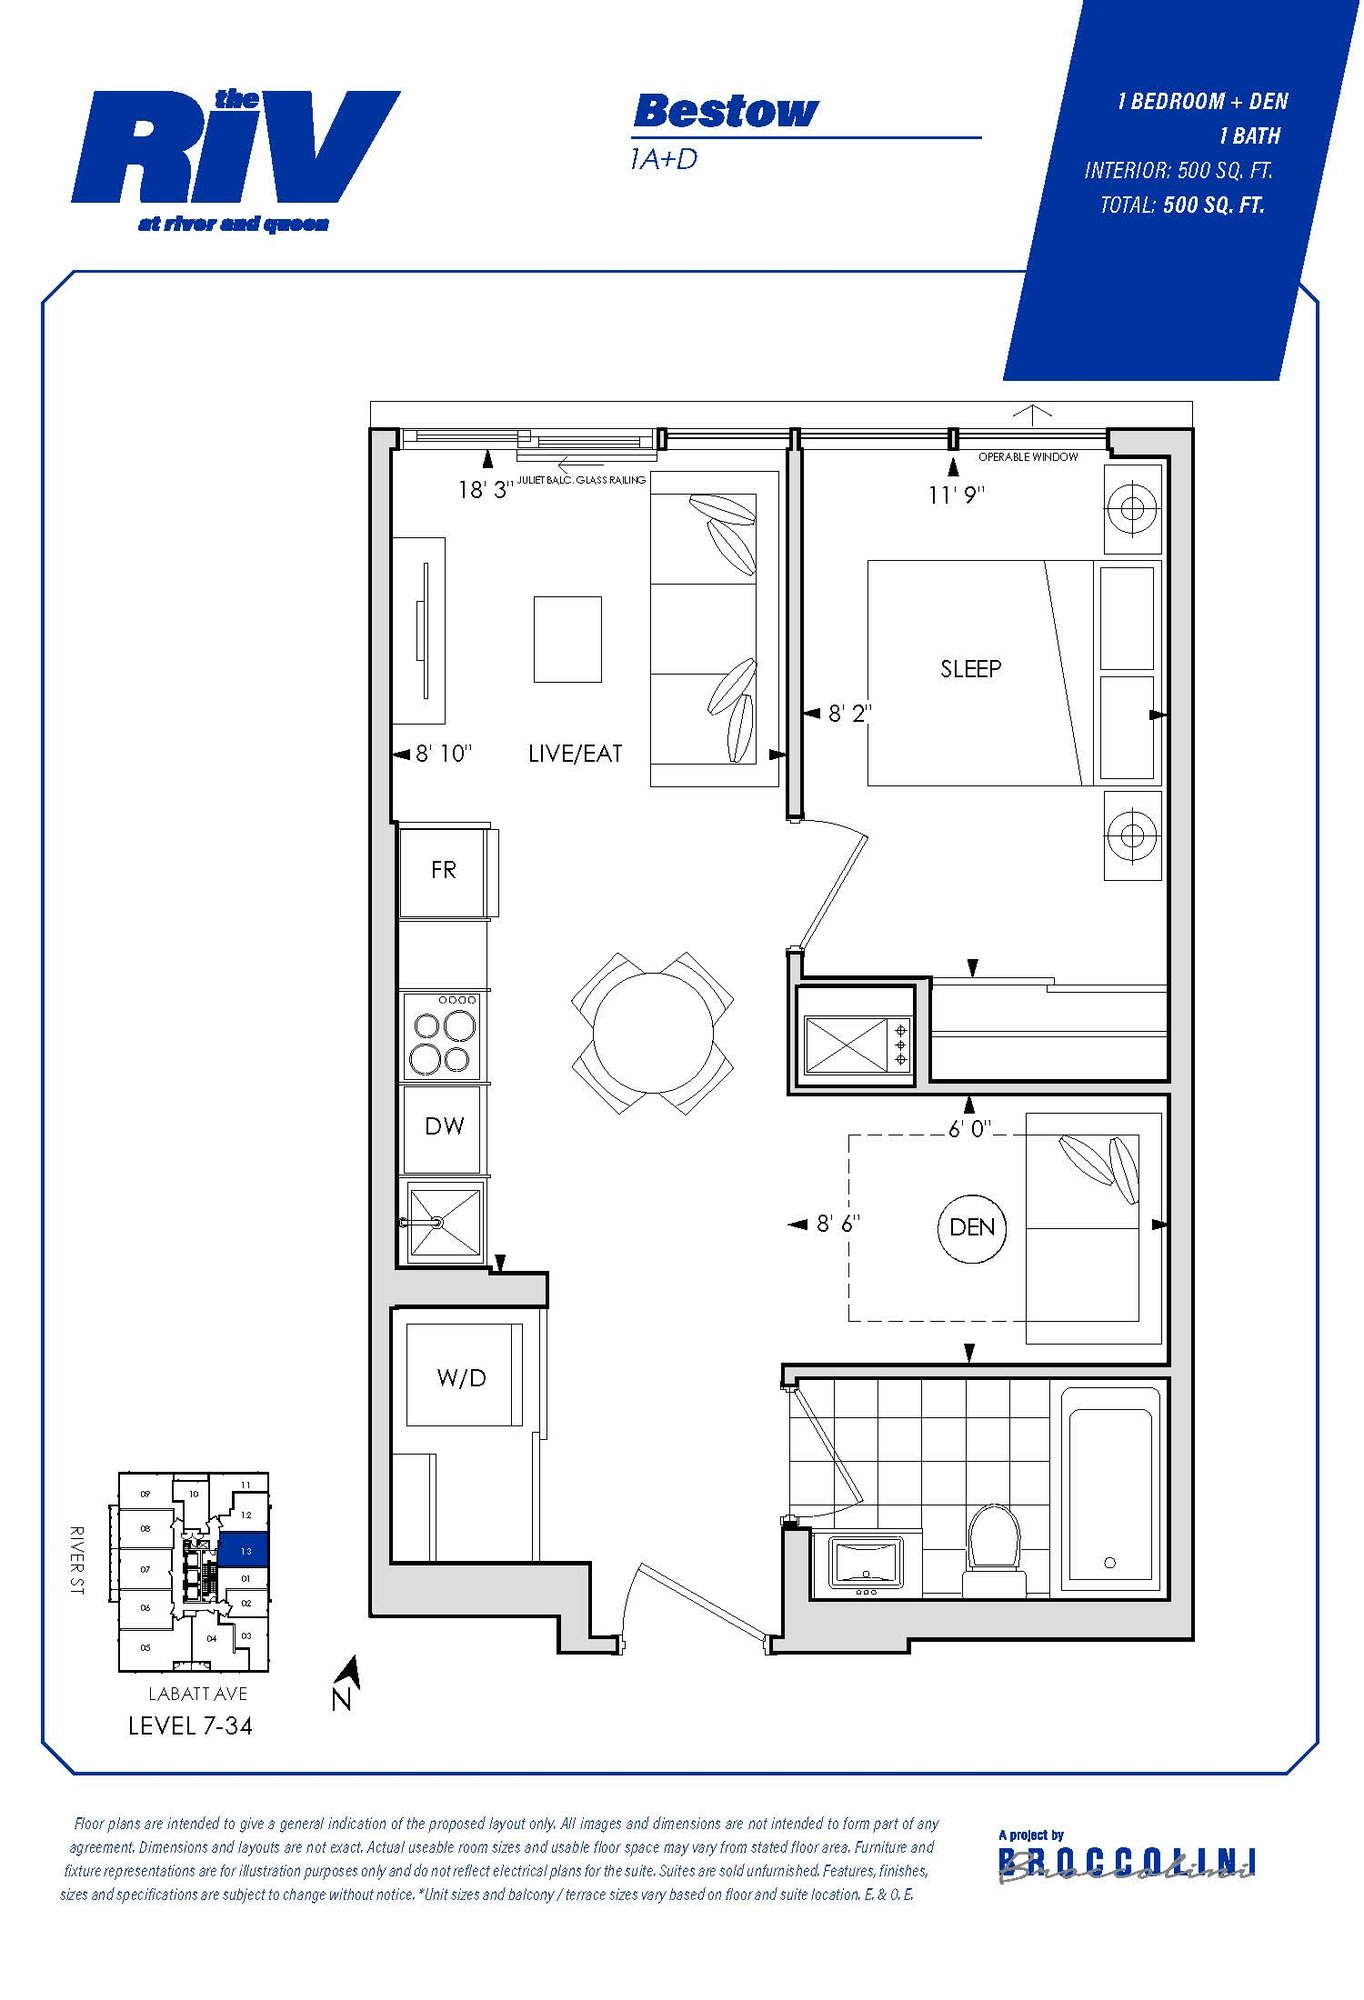 Floor plan for Bestow one bedroom unit in The Riv